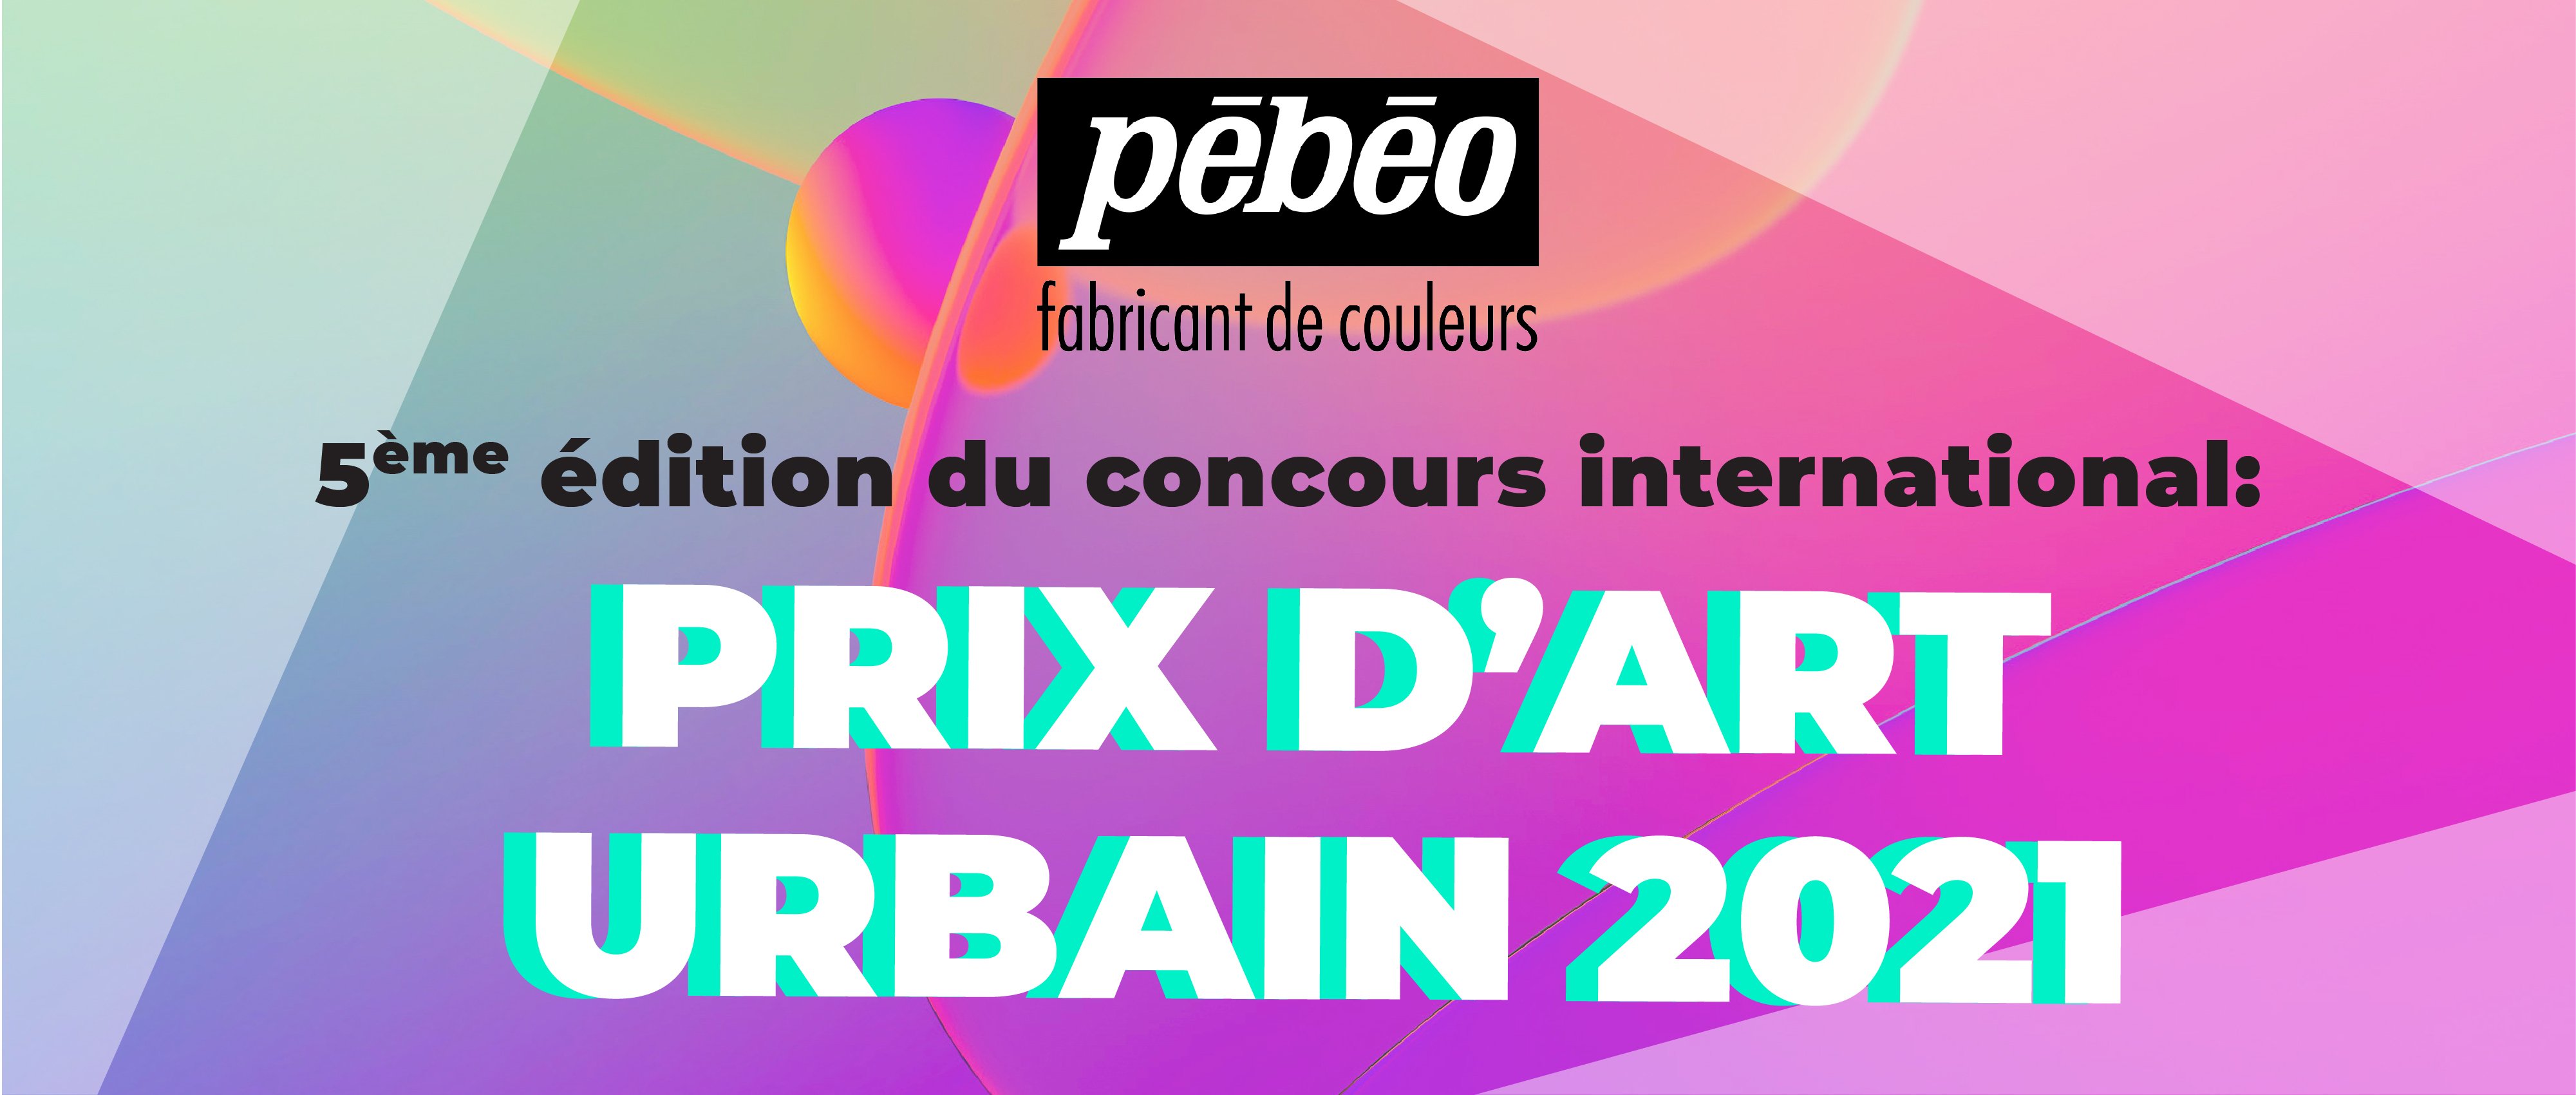 06.14 PEBEO - Prix d'Art Urbain 2021 logo_3.jpg